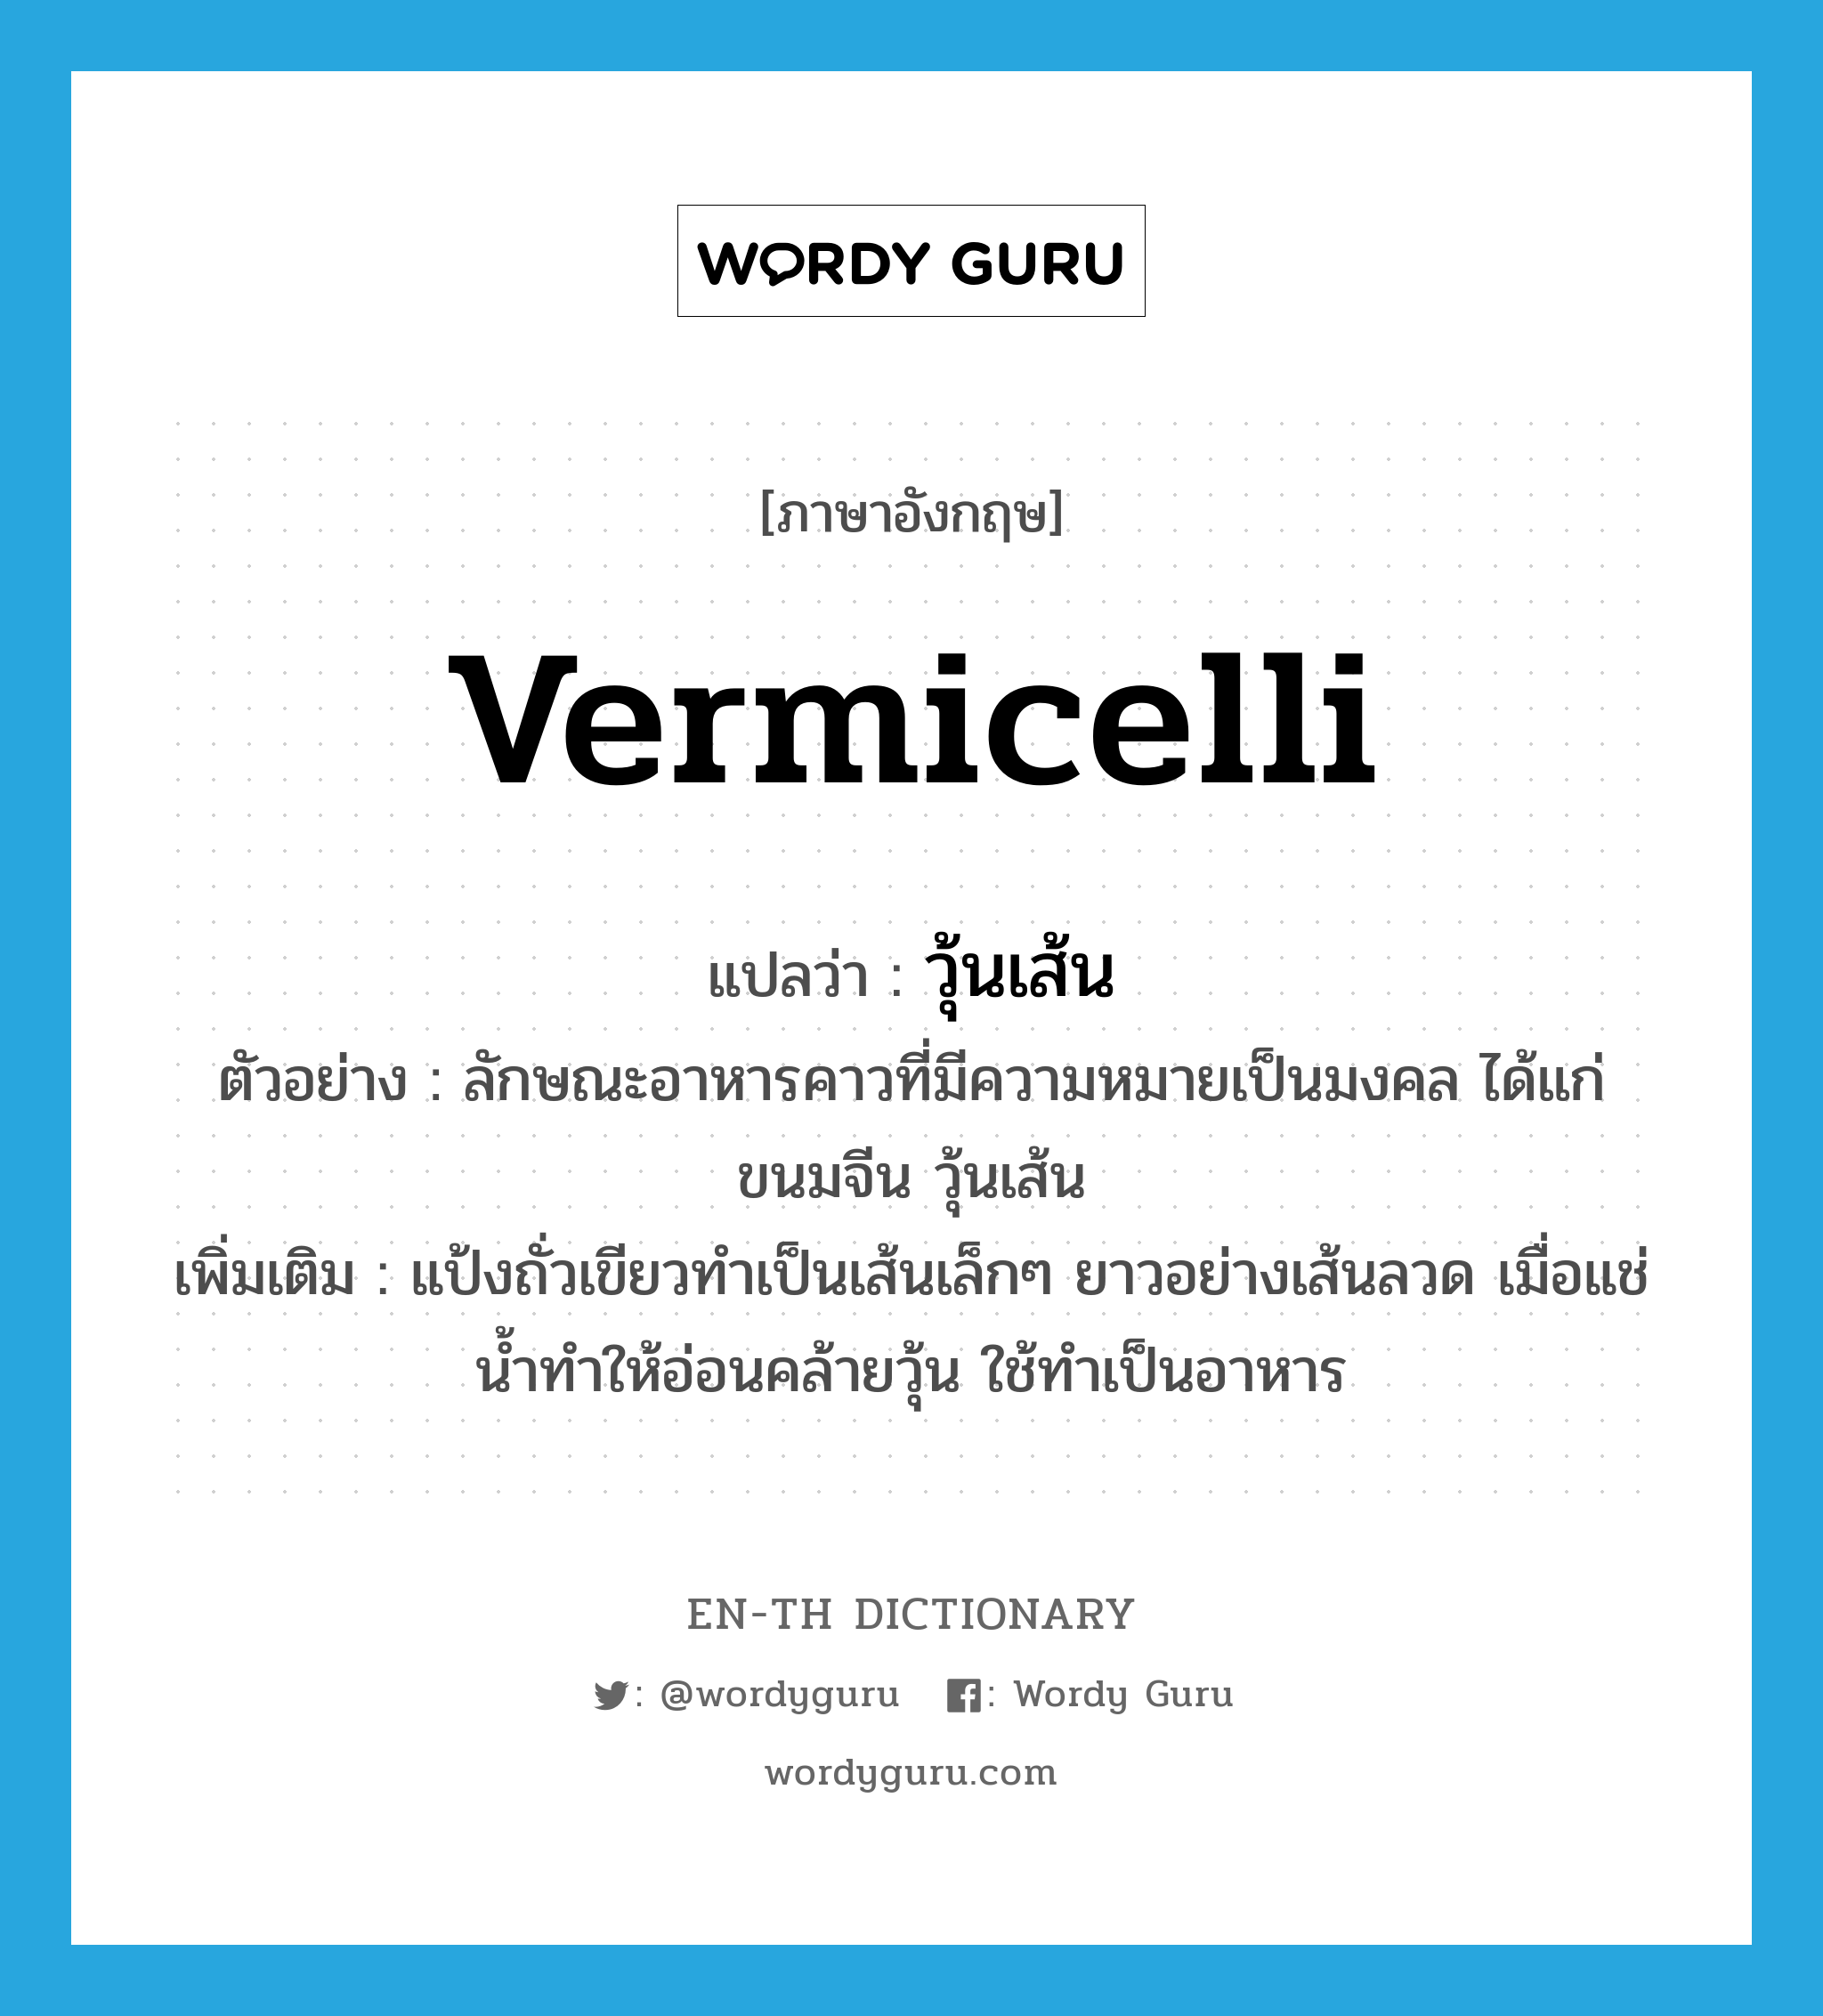 vermicelli แปลว่า?, คำศัพท์ภาษาอังกฤษ vermicelli แปลว่า วุ้นเส้น ประเภท N ตัวอย่าง ลักษณะอาหารคาวที่มีความหมายเป็นมงคล ได้แก่ ขนมจีน วุ้นเส้น เพิ่มเติม แป้งถั่วเขียวทำเป็นเส้นเล็กๆ ยาวอย่างเส้นลวด เมื่อแช่น้ำทำให้อ่อนคล้ายวุ้น ใช้ทำเป็นอาหาร หมวด N